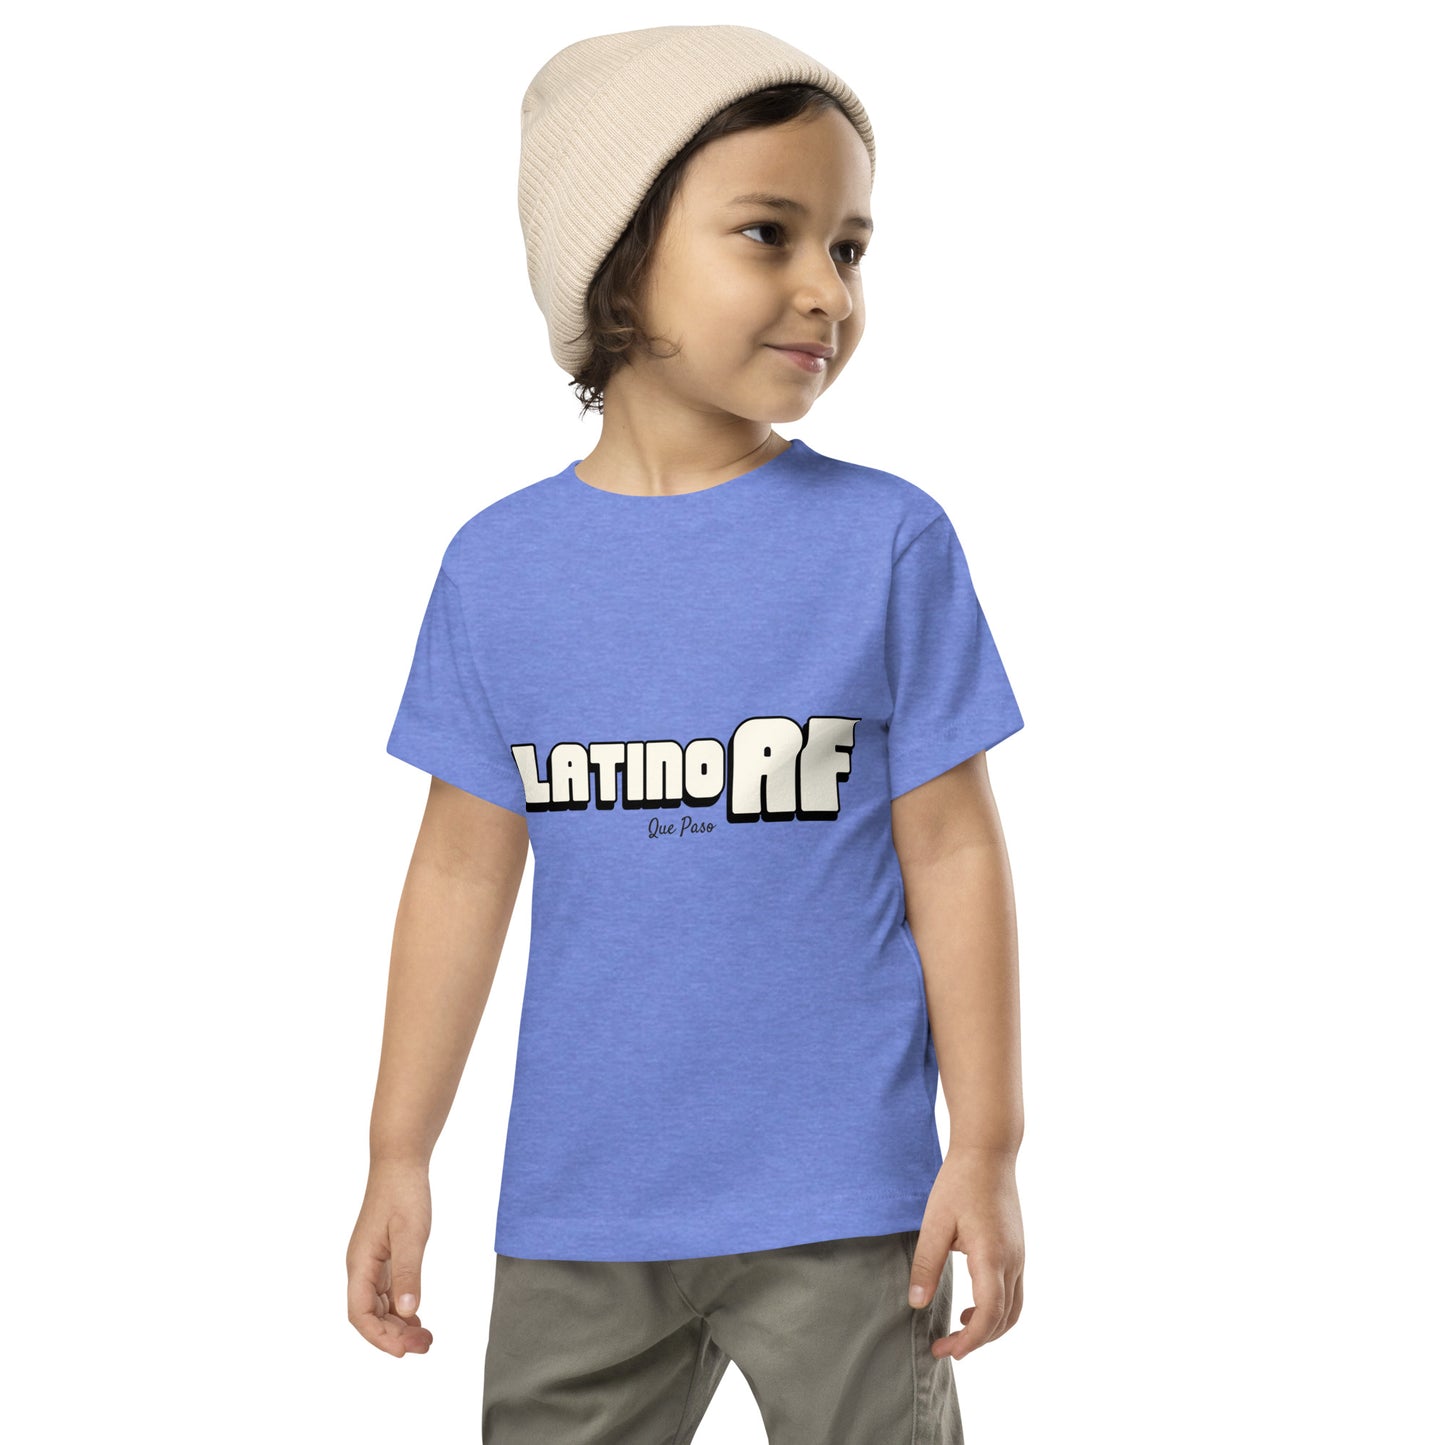 Latino AF Toddler Short Sleeve Tee